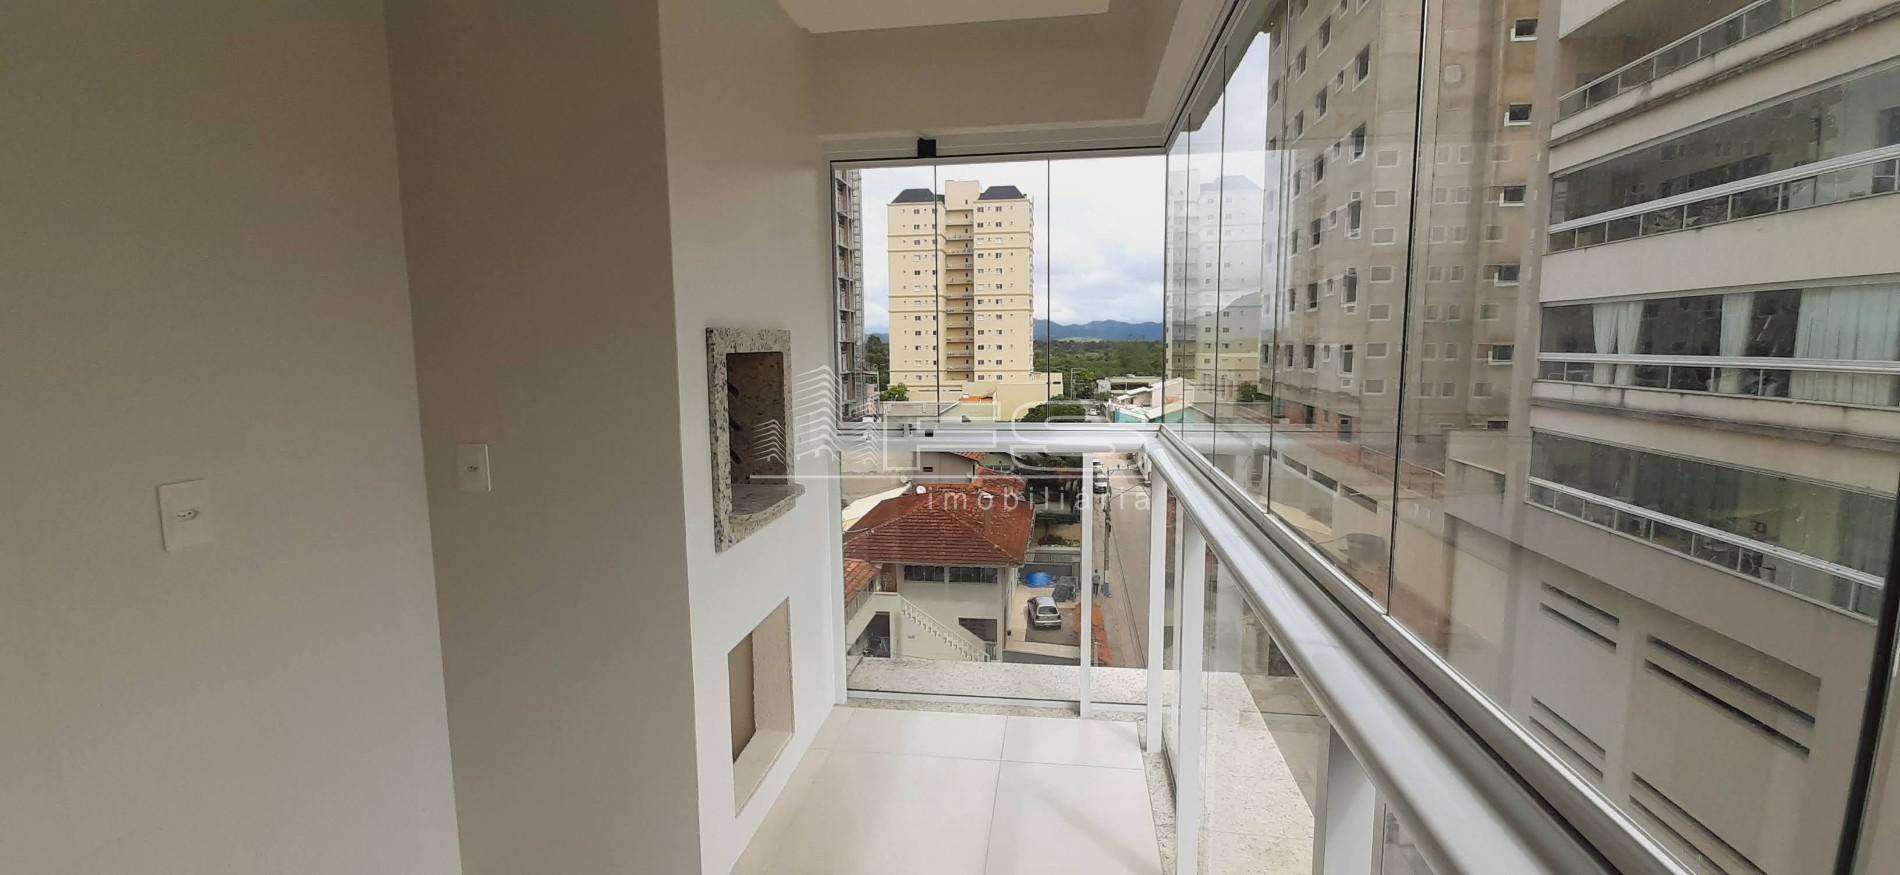 Apartamento com 2 Dormitórios à venda, 68 m² por R$ 740.000,00